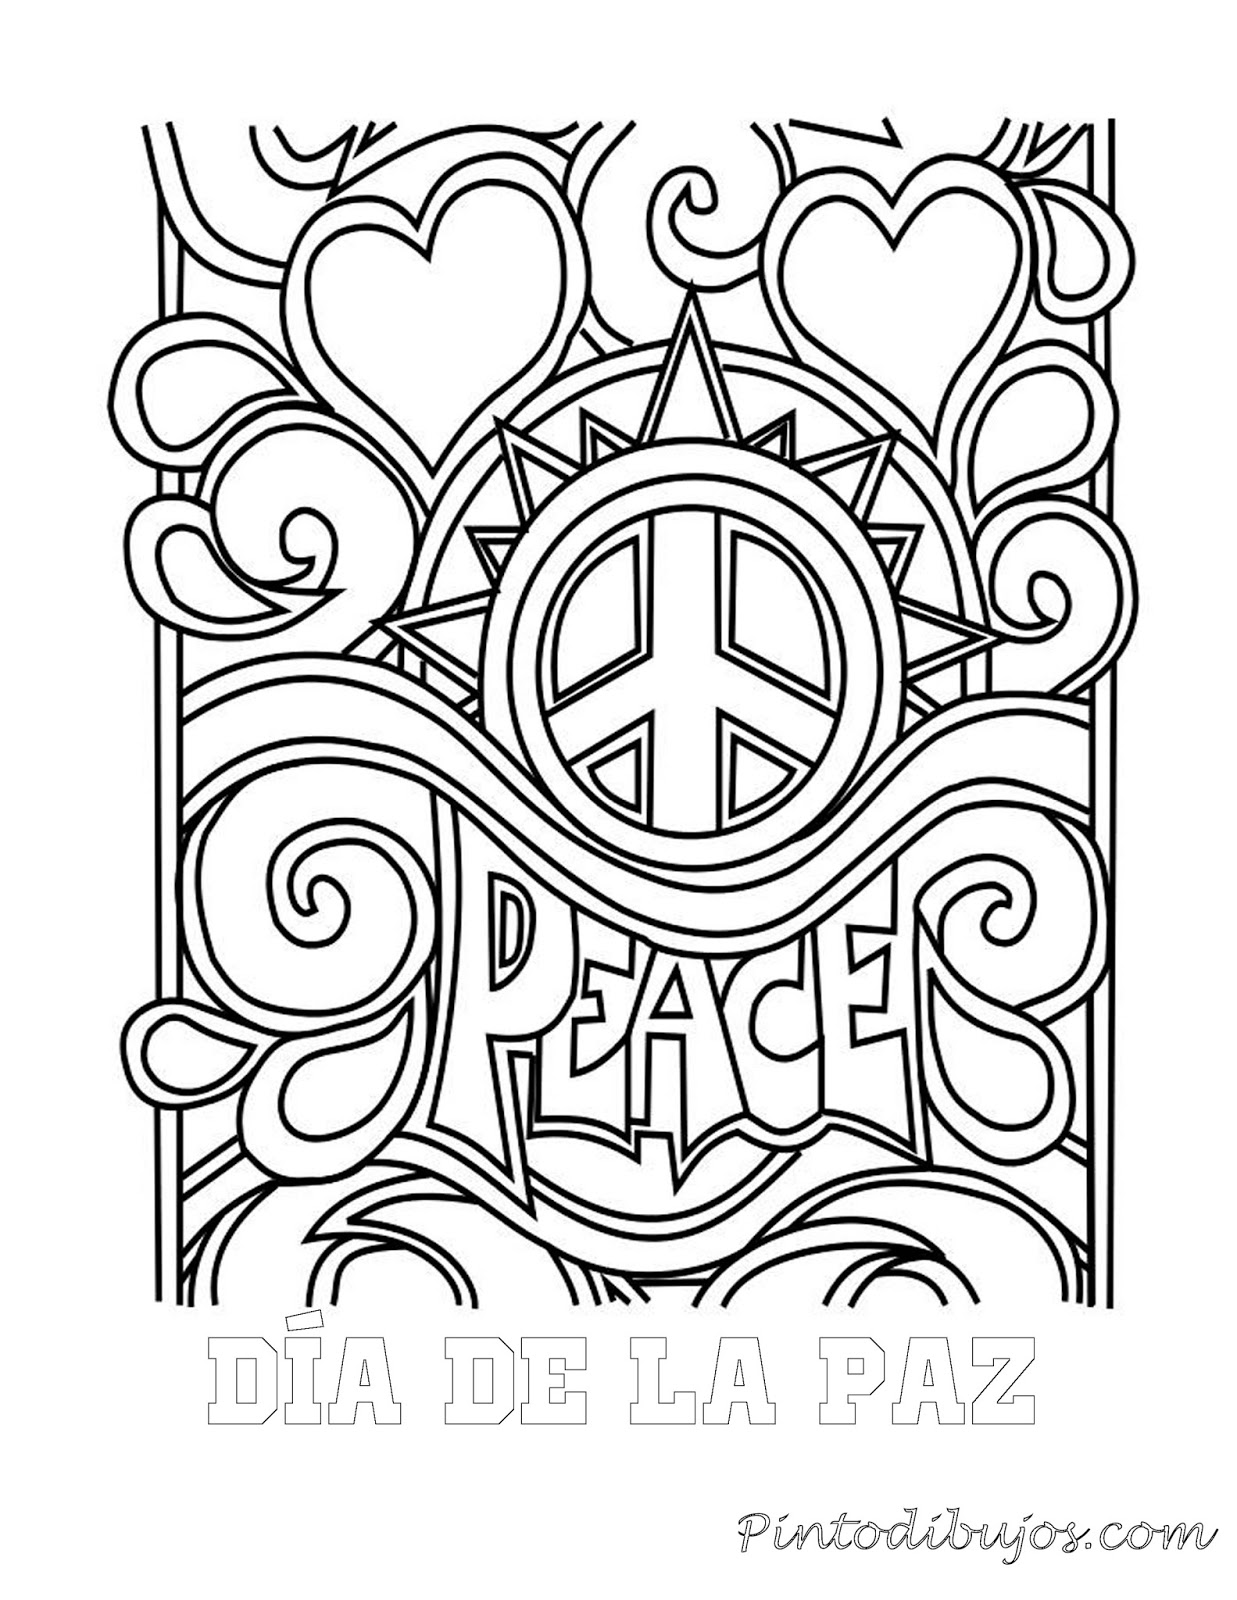 Dia de la paz para colorear | Dia de la paz para colorear 